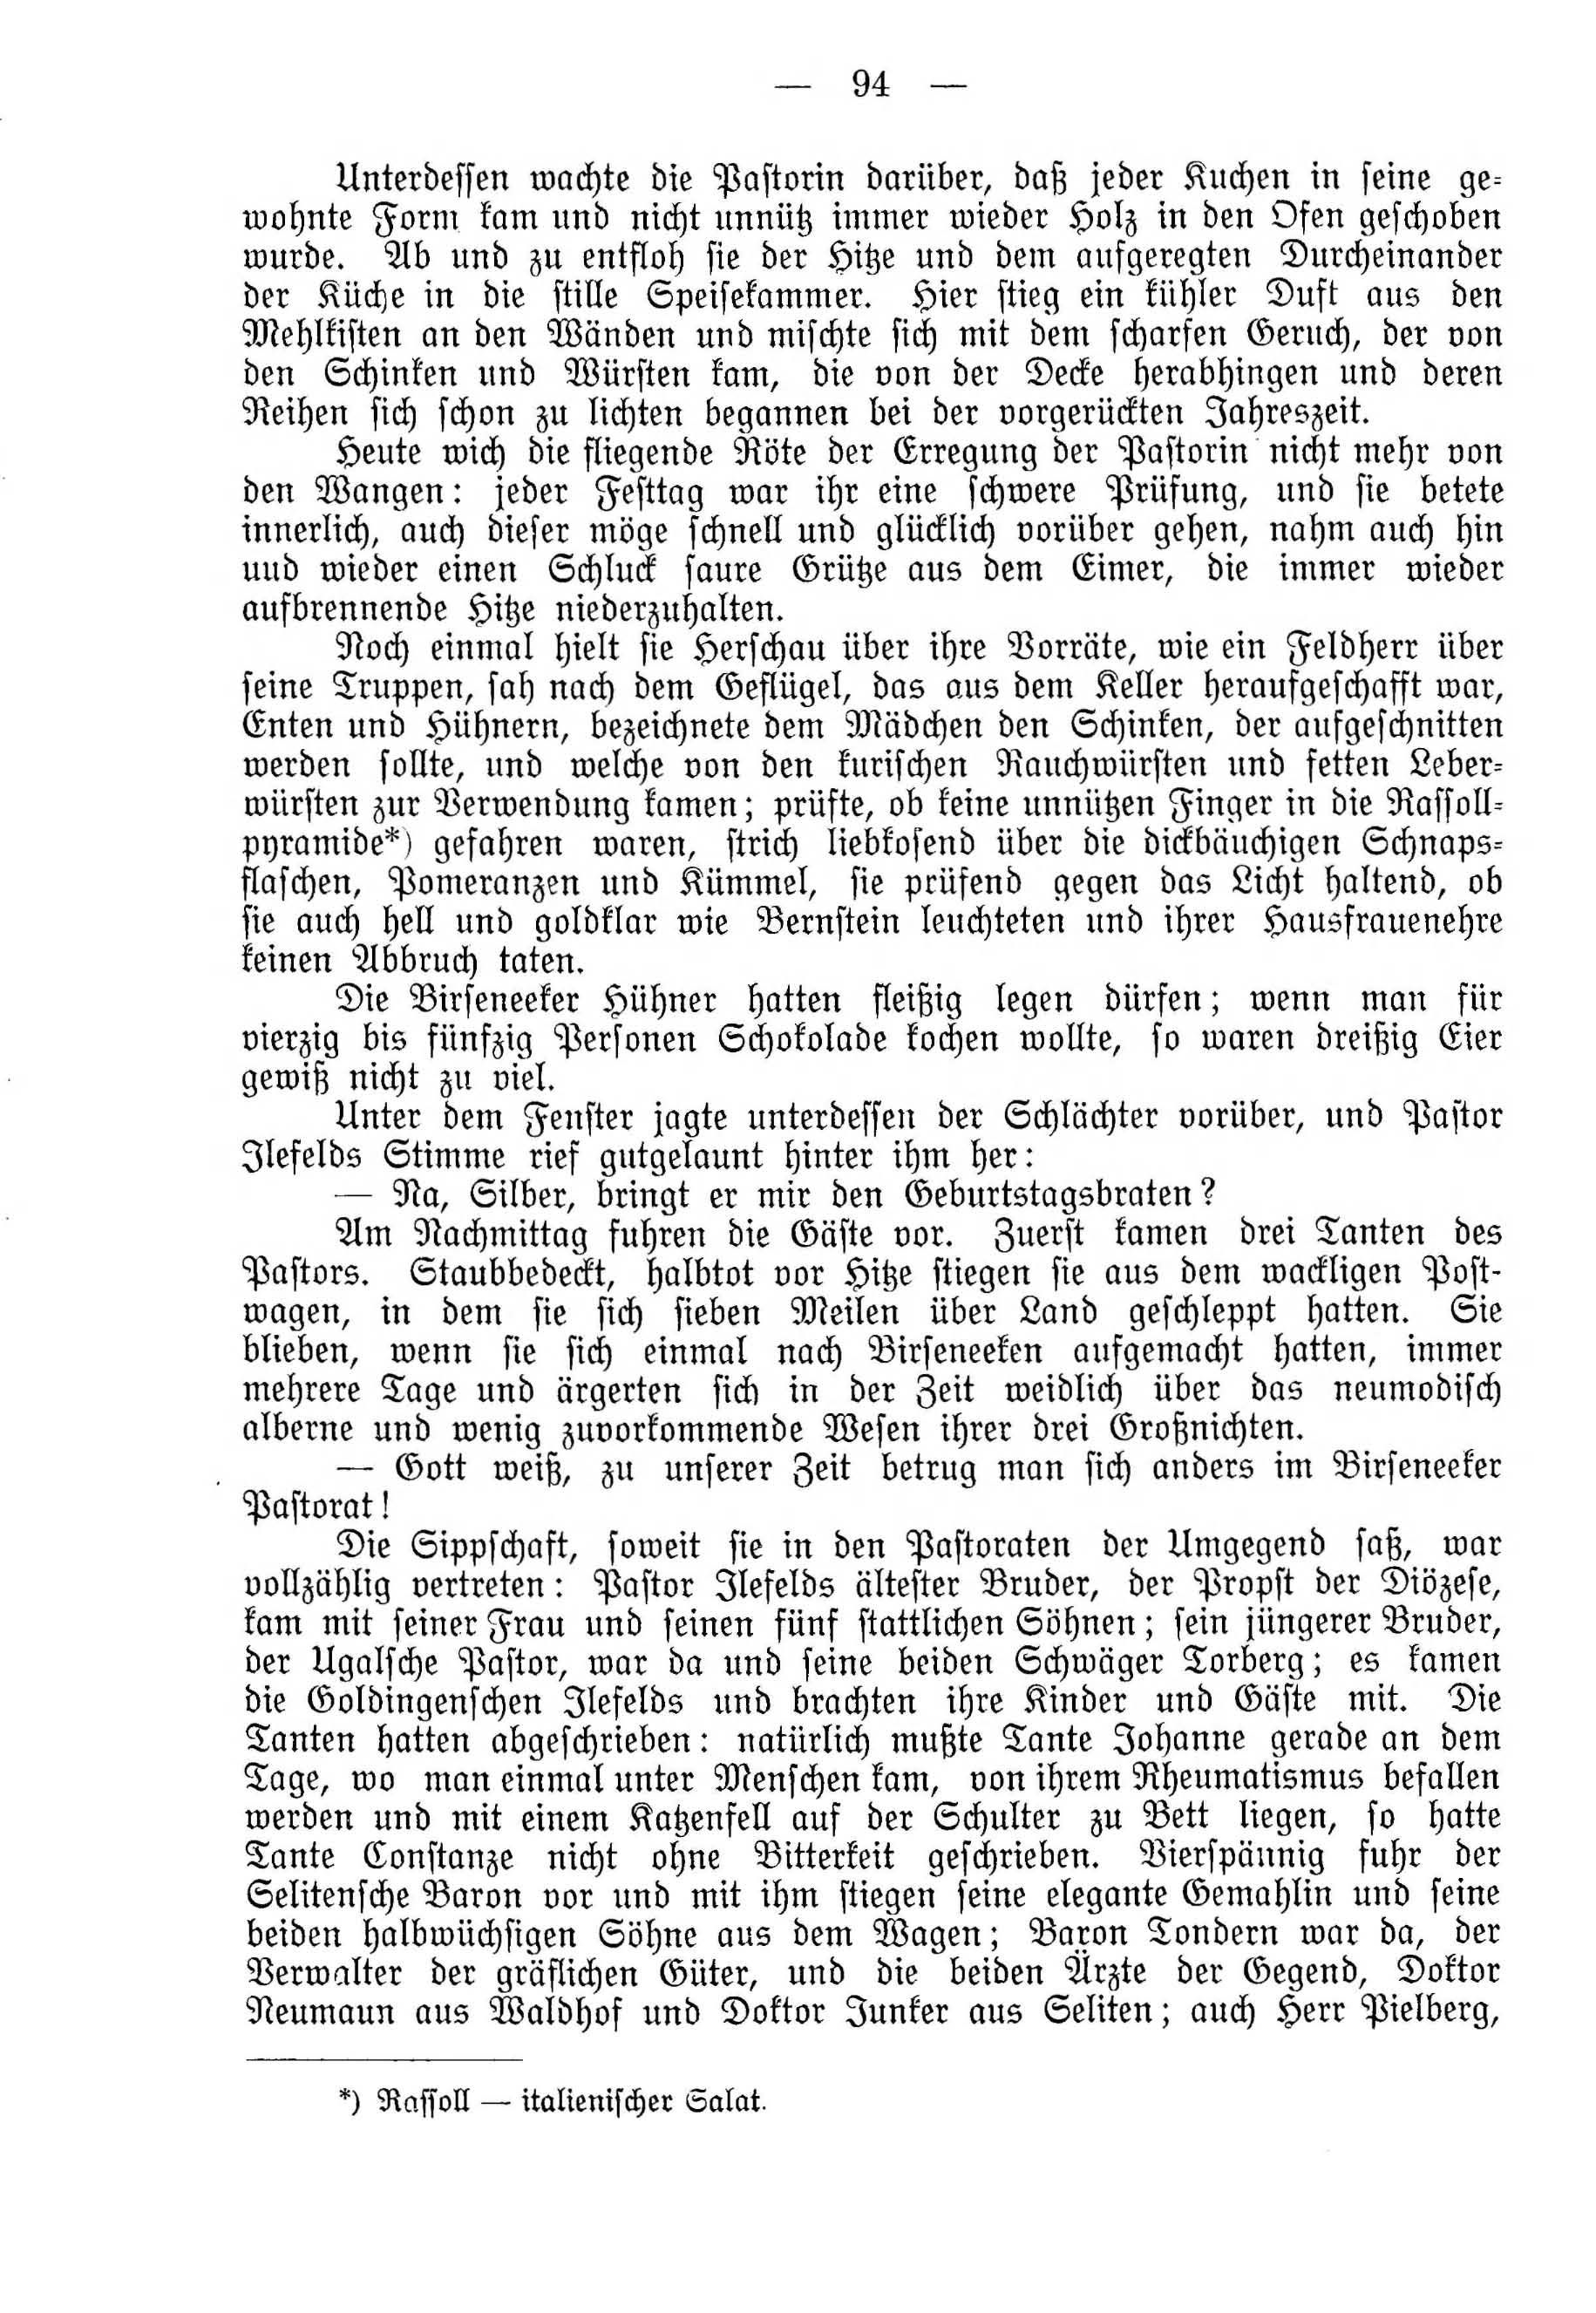 Deutsche Monatsschrift für Russland [4] (1915) | 94. (94) Main body of text